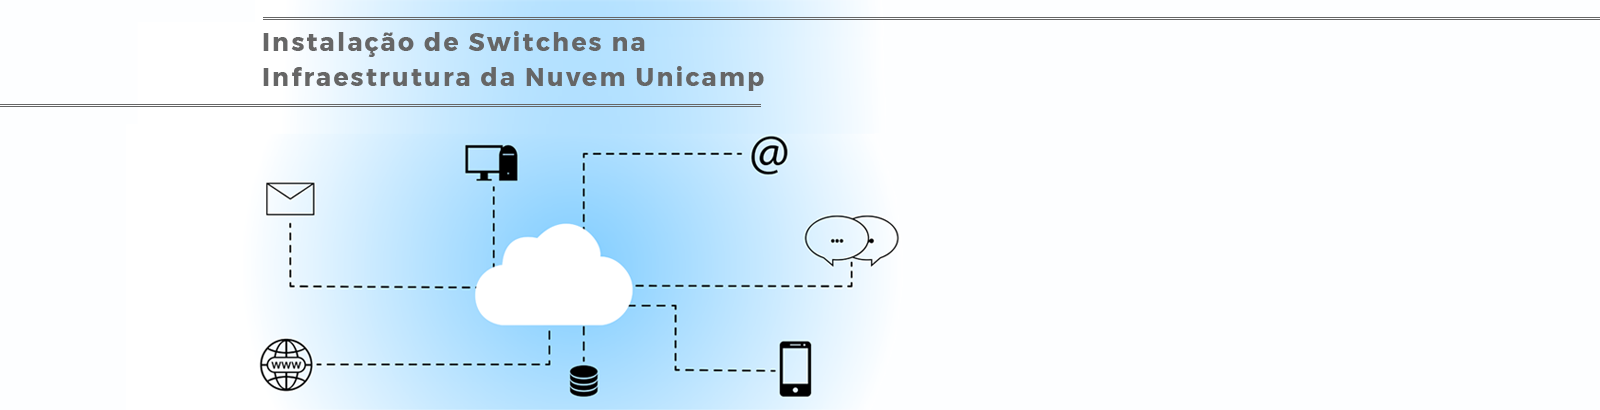 Nuvem Unicamp